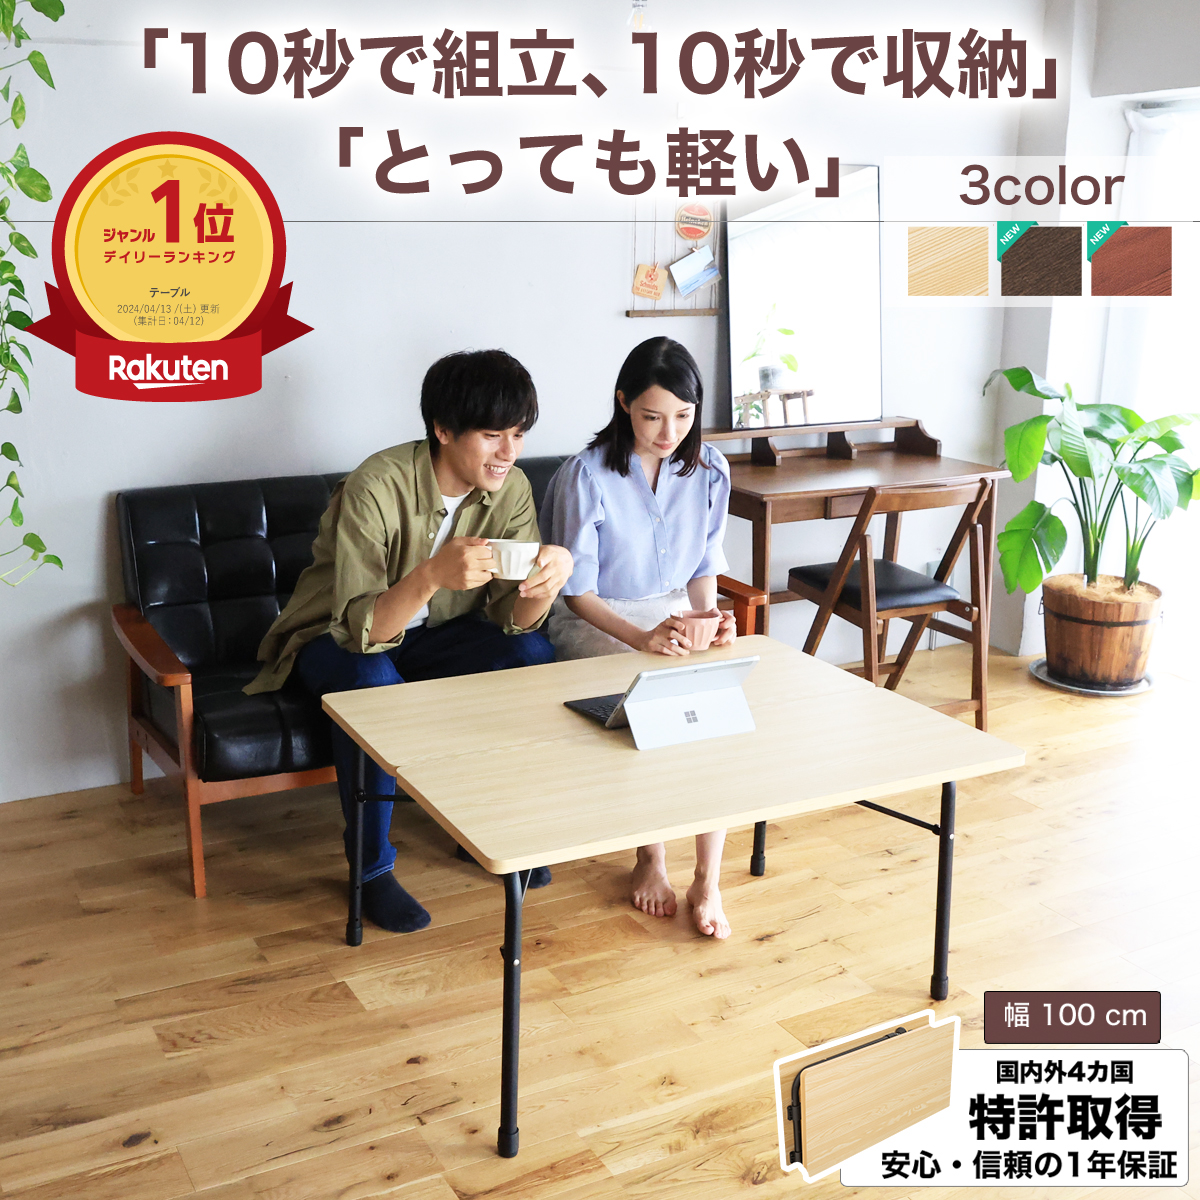 日本製 テーブル 折りたたみ ローテーブル ミニテーブル 勉強 机 在宅勤務 ベッド ソファー コンパクト 持ち運び??人暮らし パソコンデスク PC  食事 アウトドア 小型